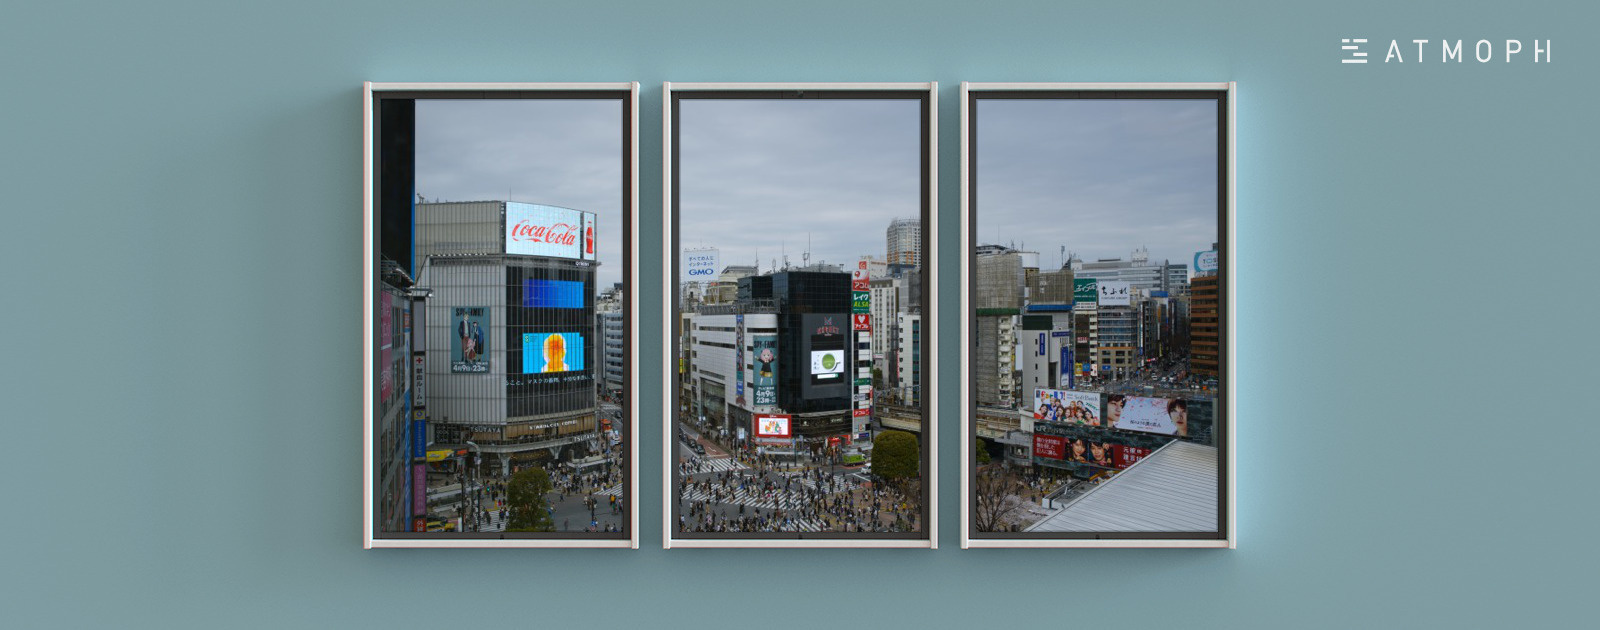 渋谷のスクランブル交差点を 部屋の窓から Atmoph Window 2で賑わう東京の風景をリリース Newscast